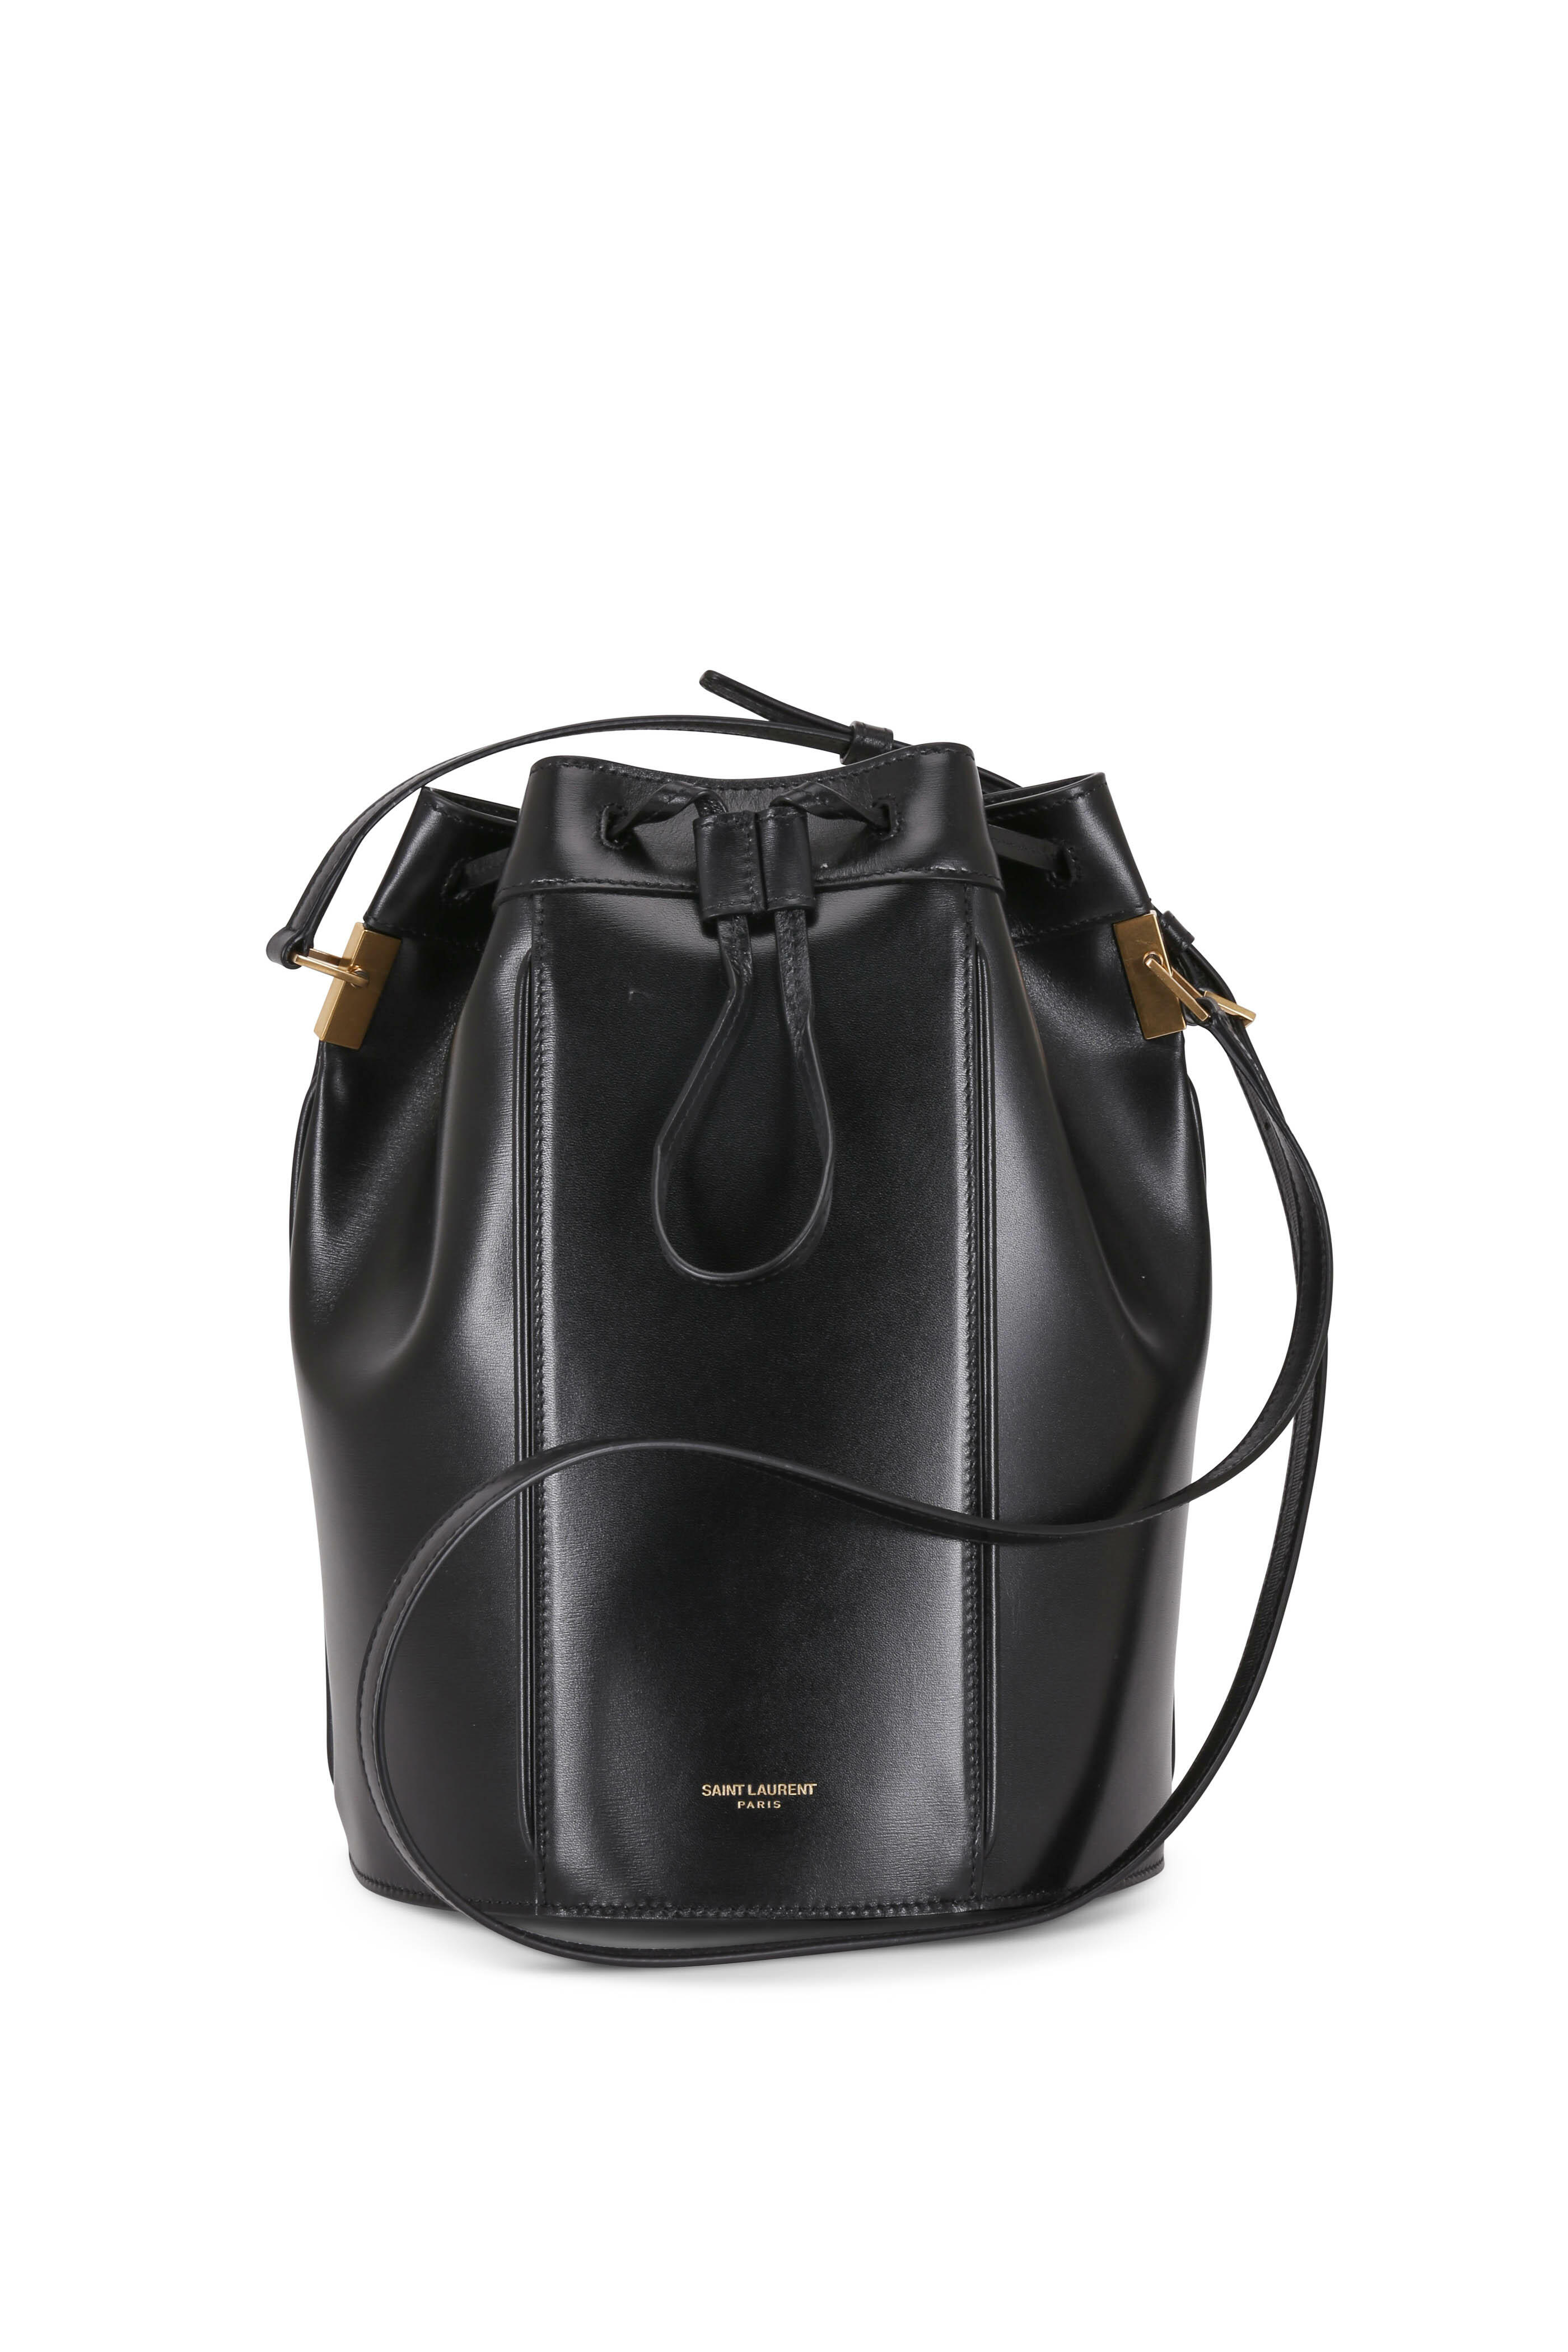 Saint Laurent - Talitha Black Leather Medium Bucket Bag